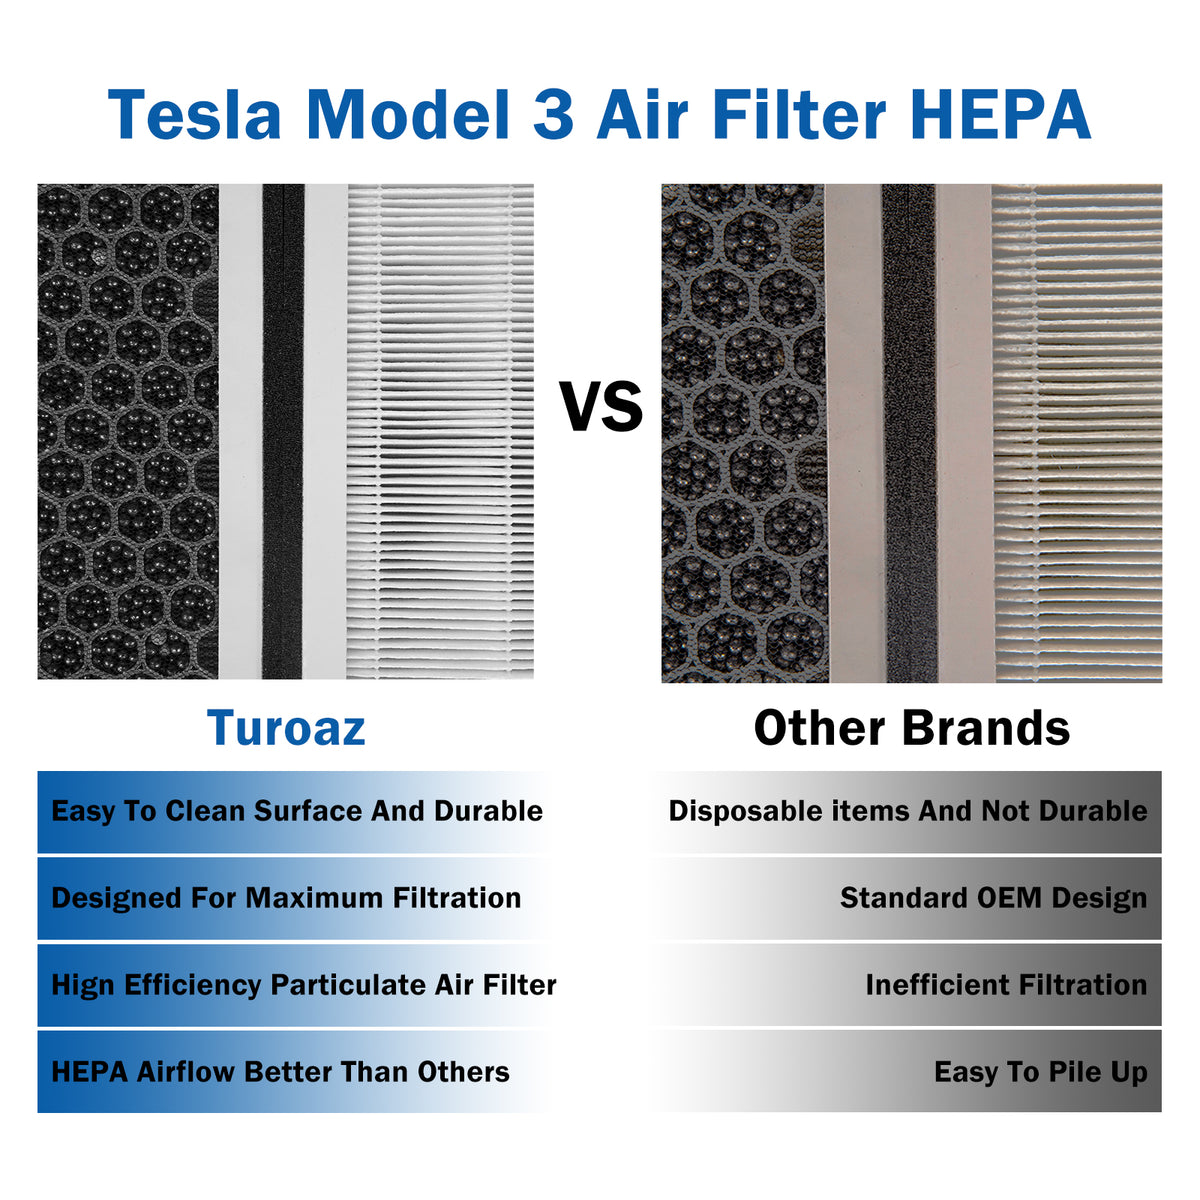 Tesla Model 3 Air Filter HEPA